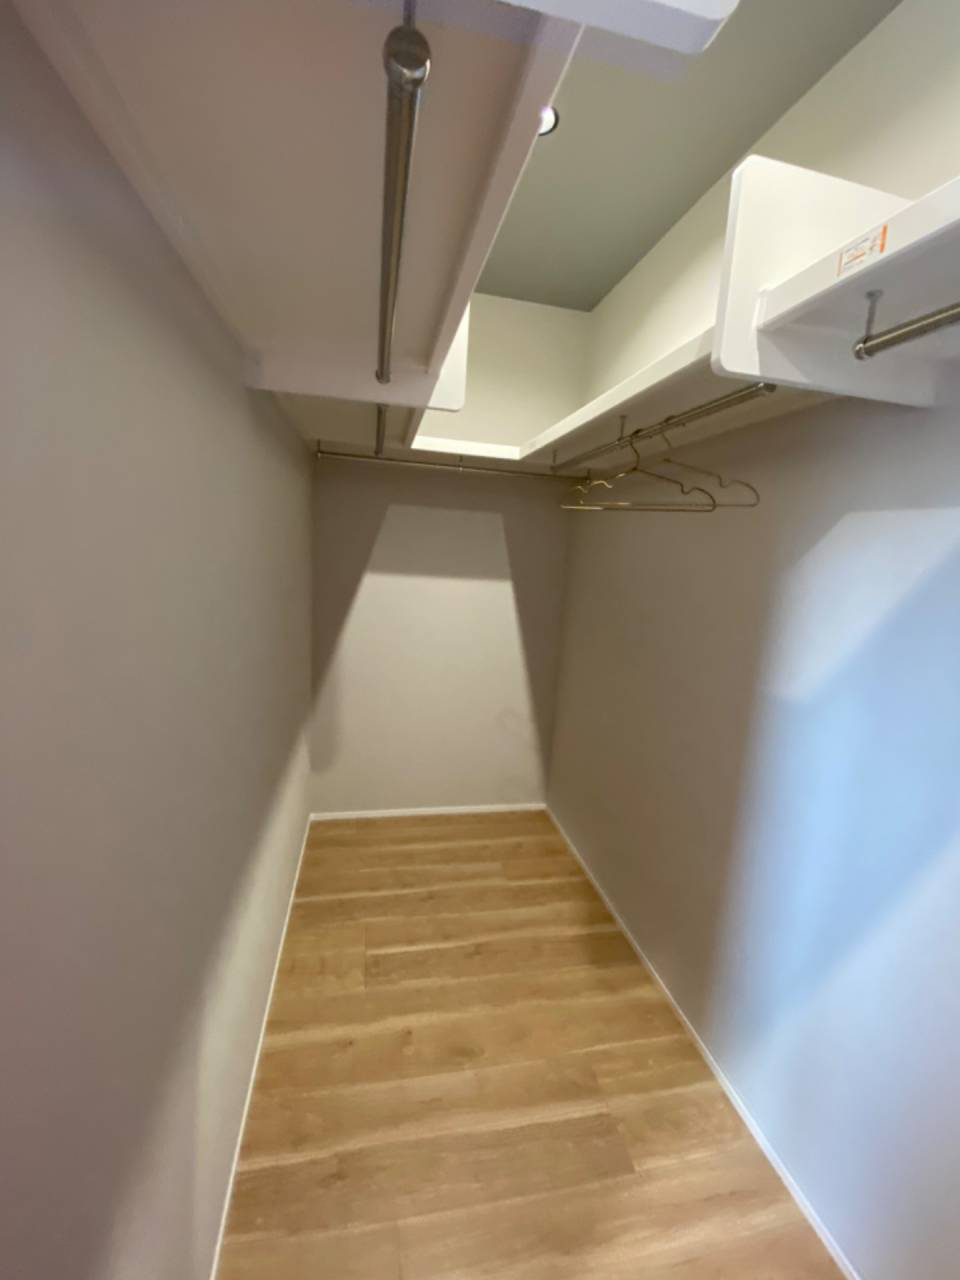 【オープンクローゼットを取り入れた快適で心地よい主寝室】宮崎市で新築・リノベーション| mikiデザインハウス